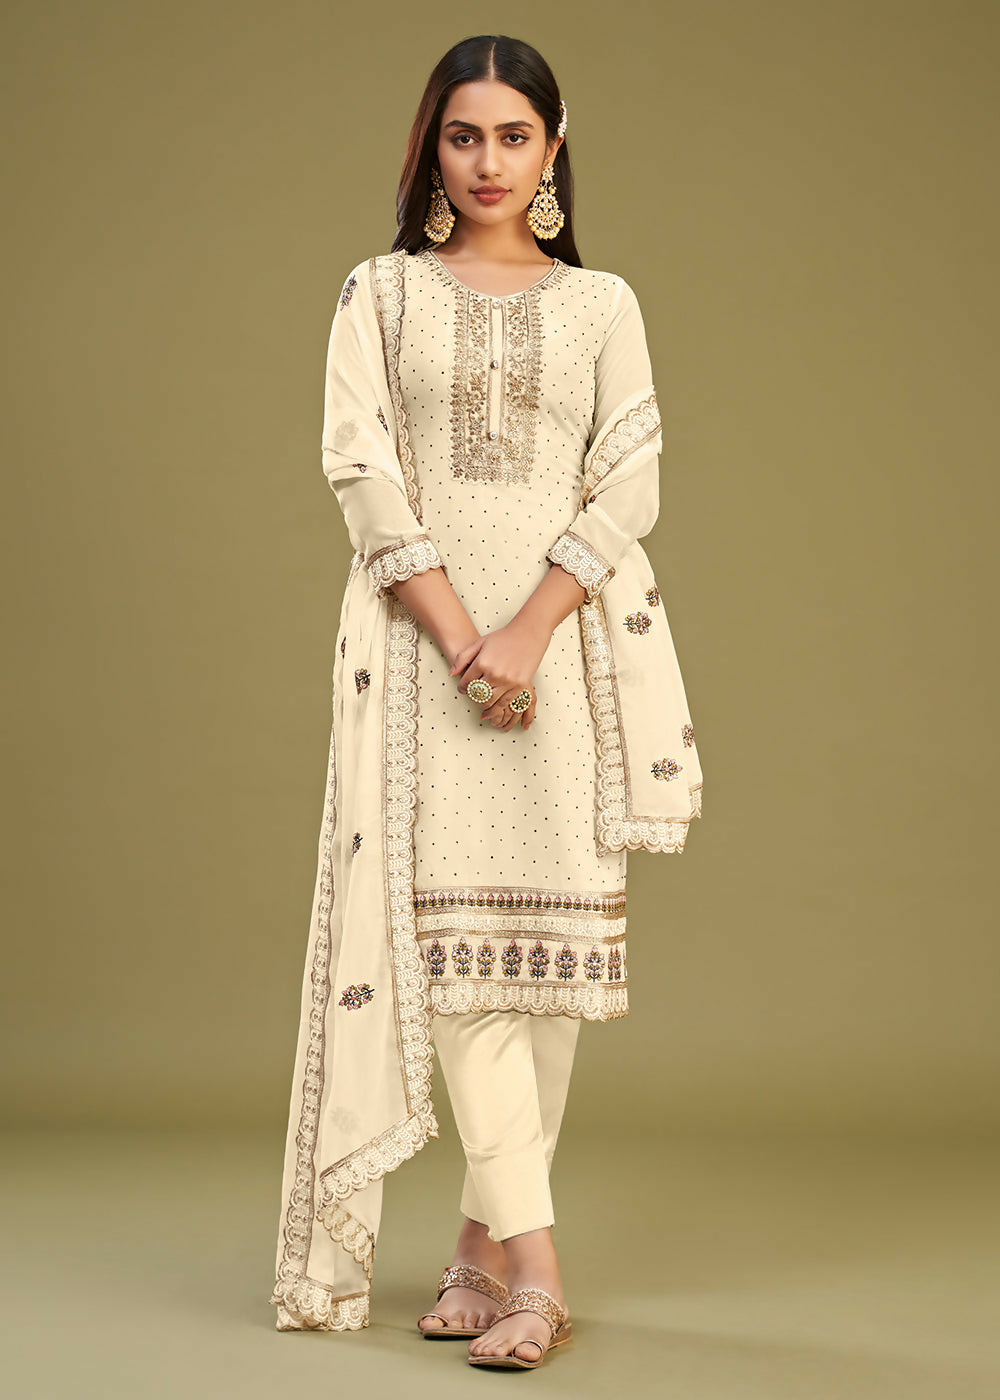 Off White Swarovski Work & Embroidered Eid Wear Salwar Suit - Emponline - Distacart